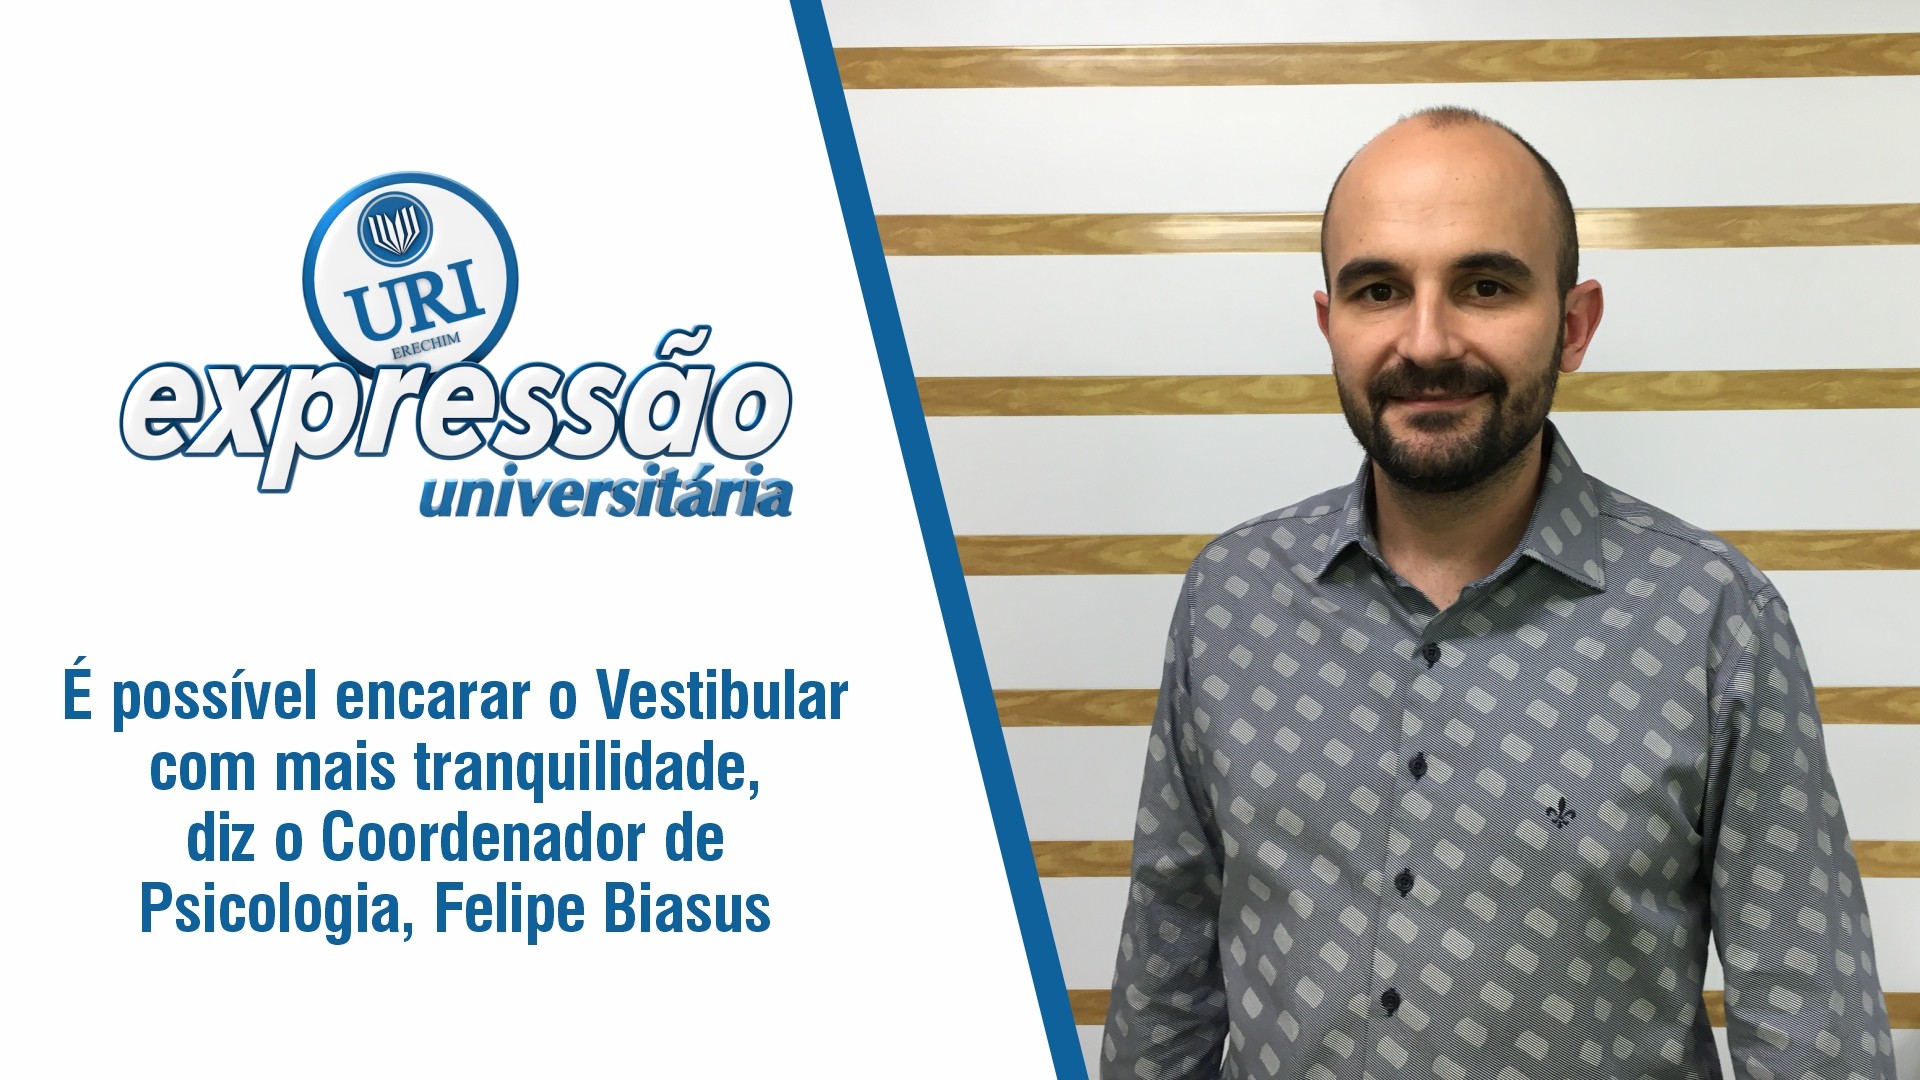  possvel encarar o Vestibular com mais tranquilidade, diz o Coordenador de Psicologia, Felipe Biazus